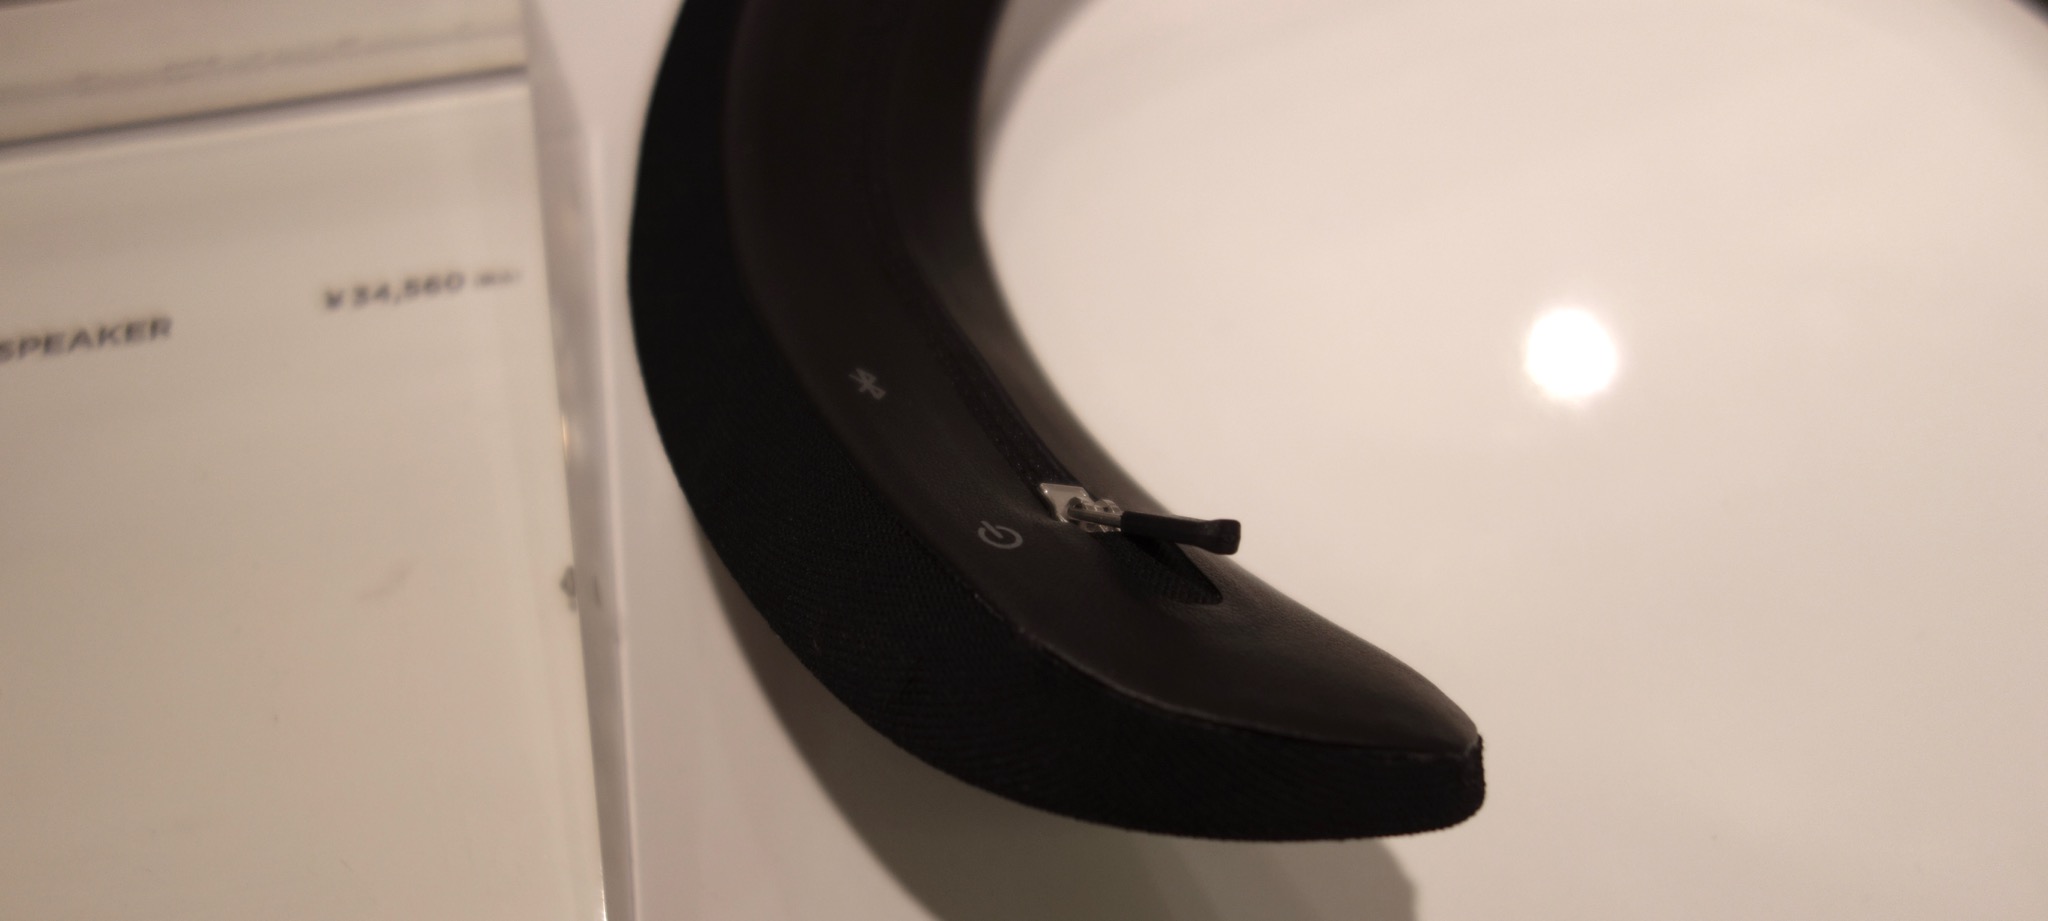 新発想の首掛けスピーカー「Bose SoundWear Companion speaker」ミニ 